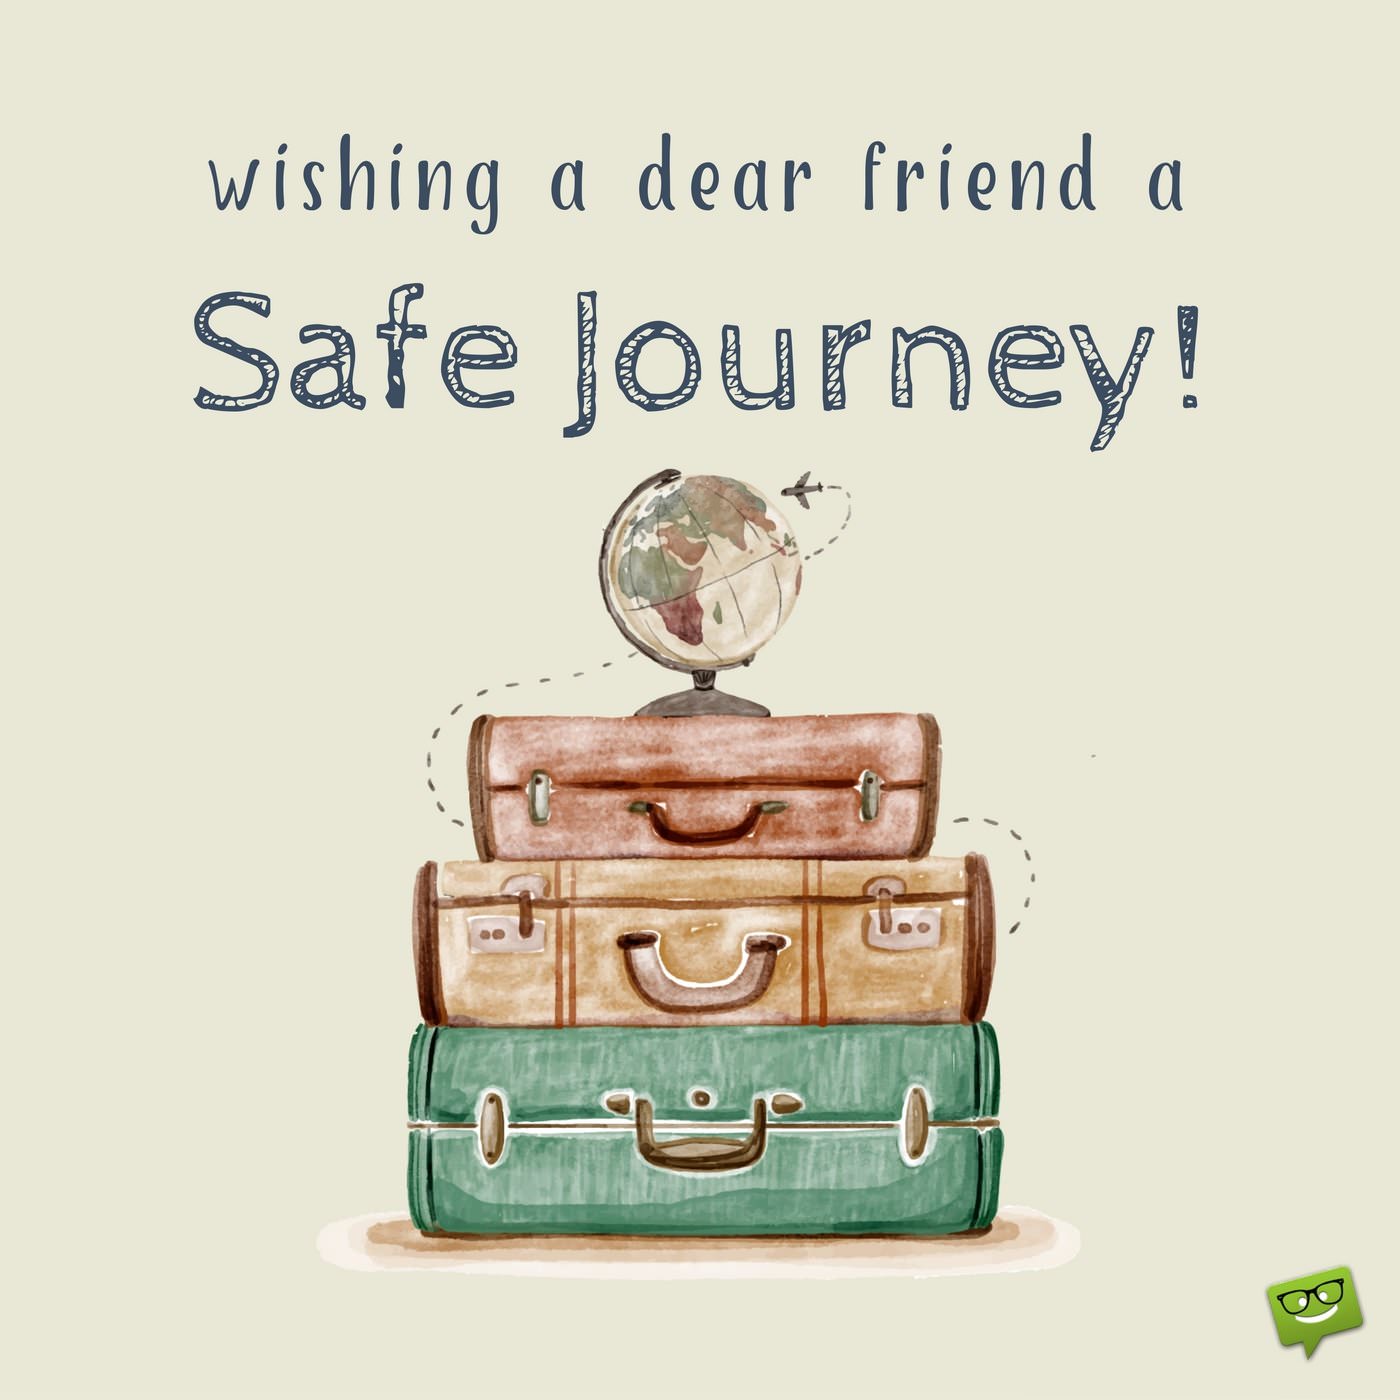 Wishing a dear friend a safe journey!